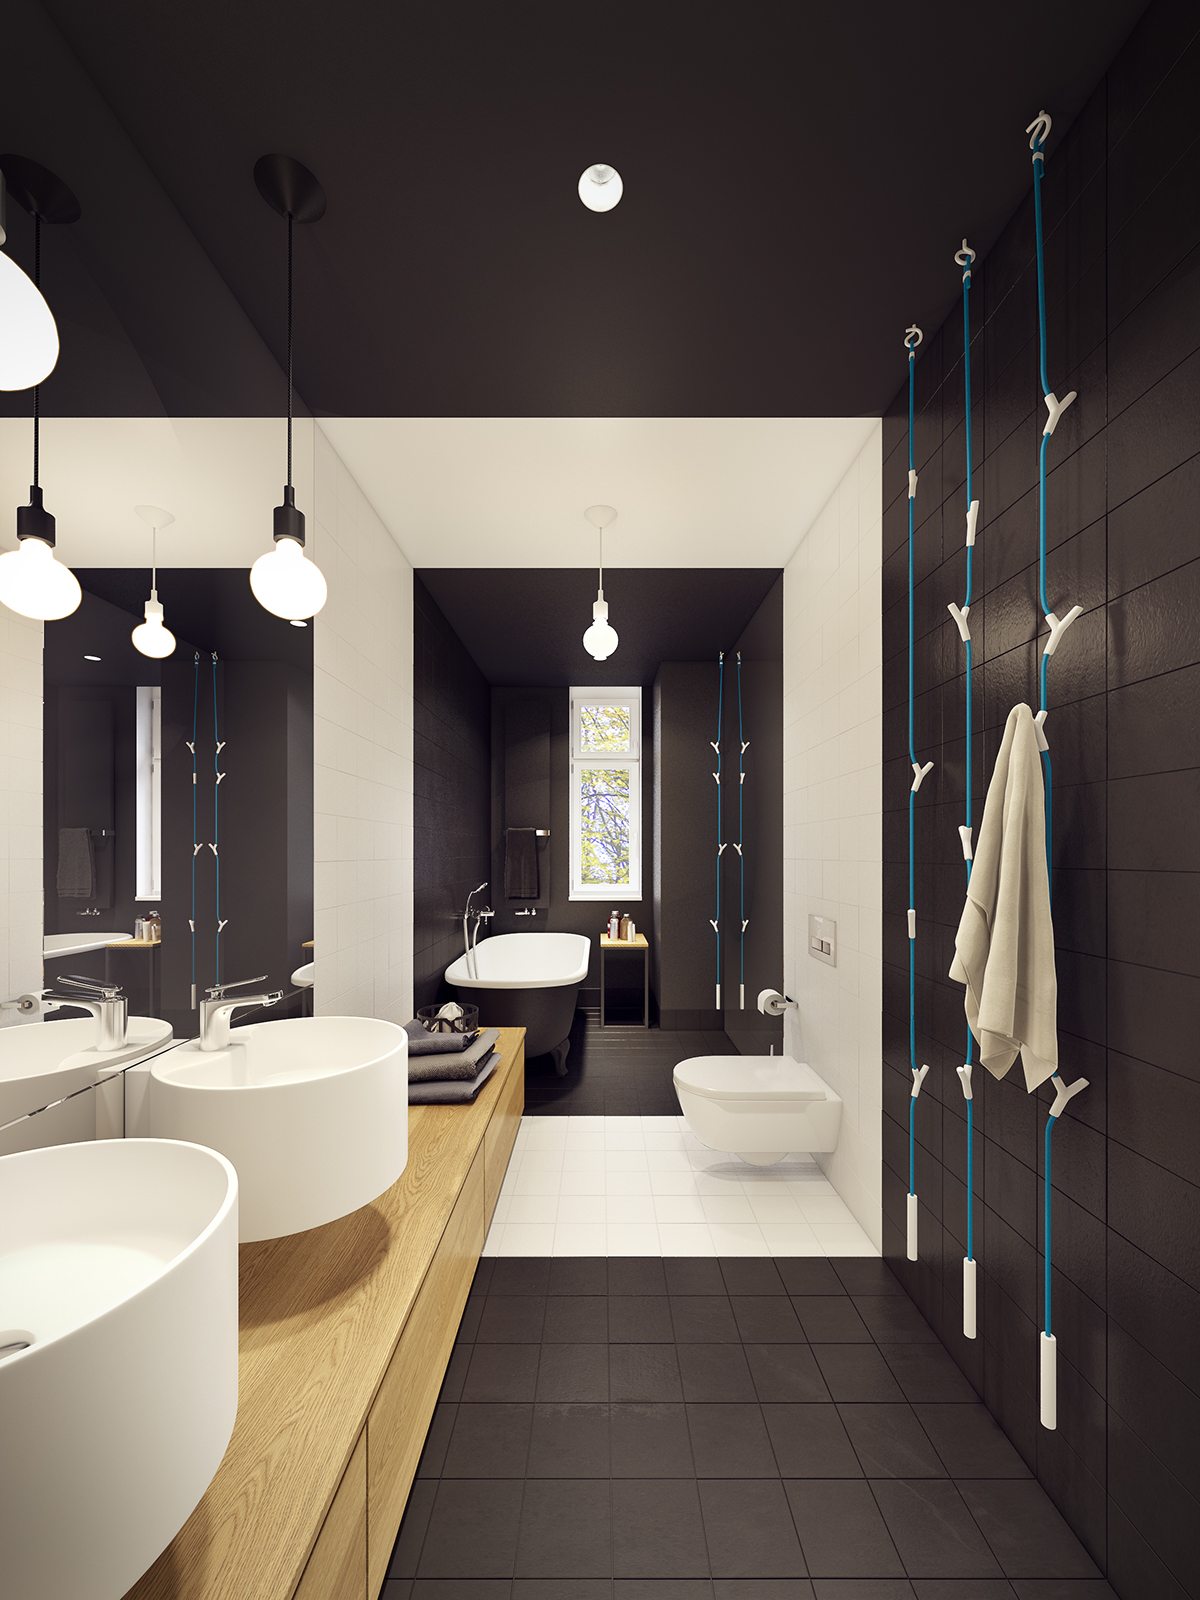 Creatice Elegant Bathrooms for Large Space